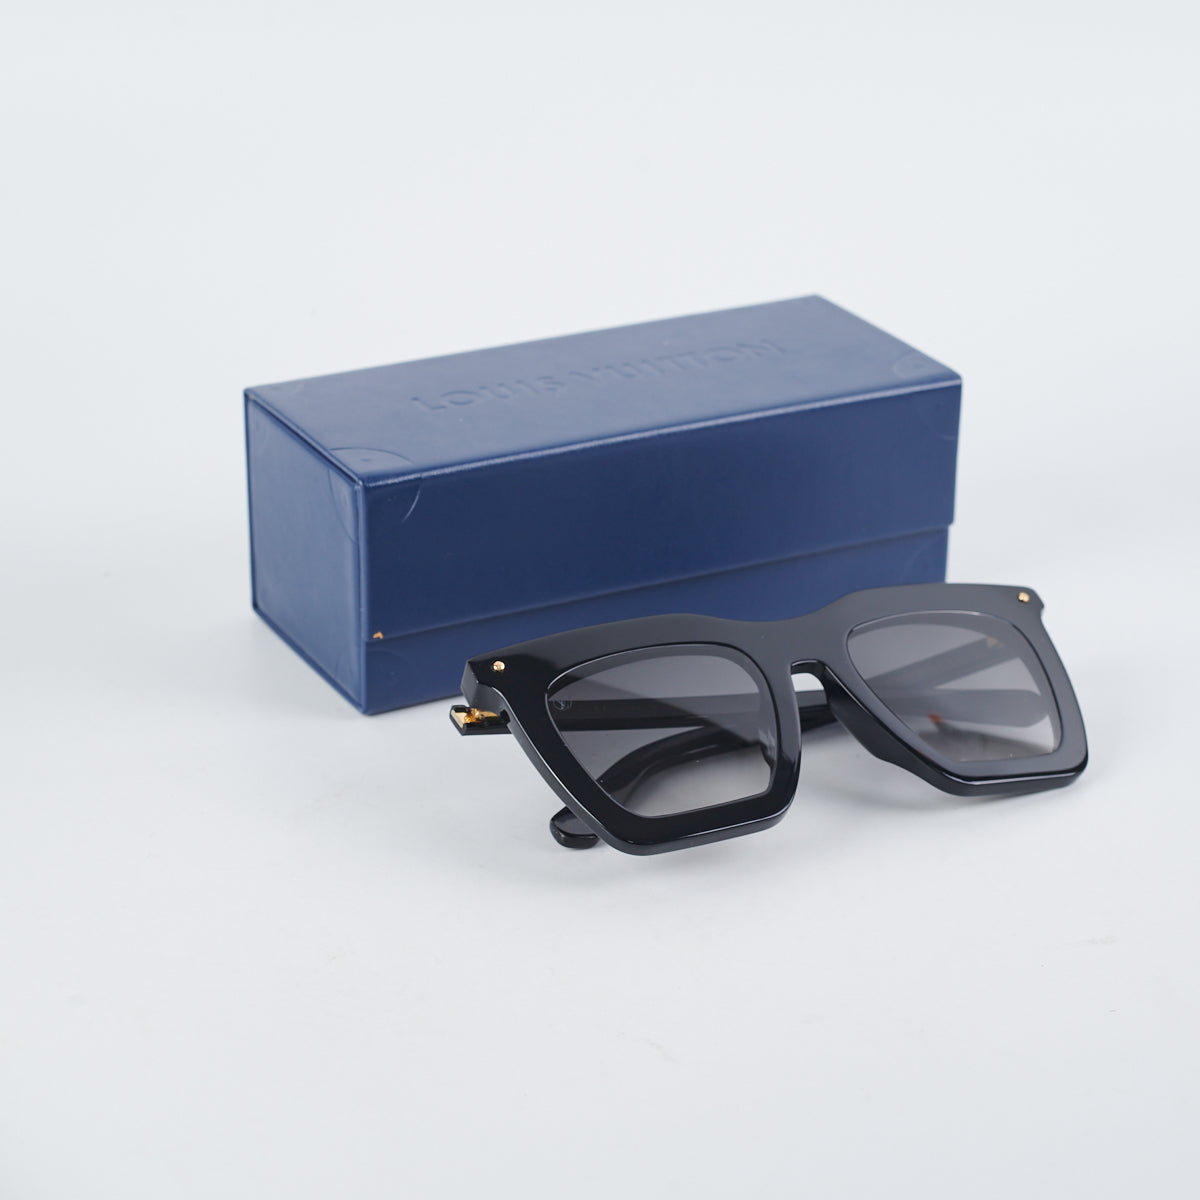 Louis Vuitton La Grande Bellezza Sunglasses